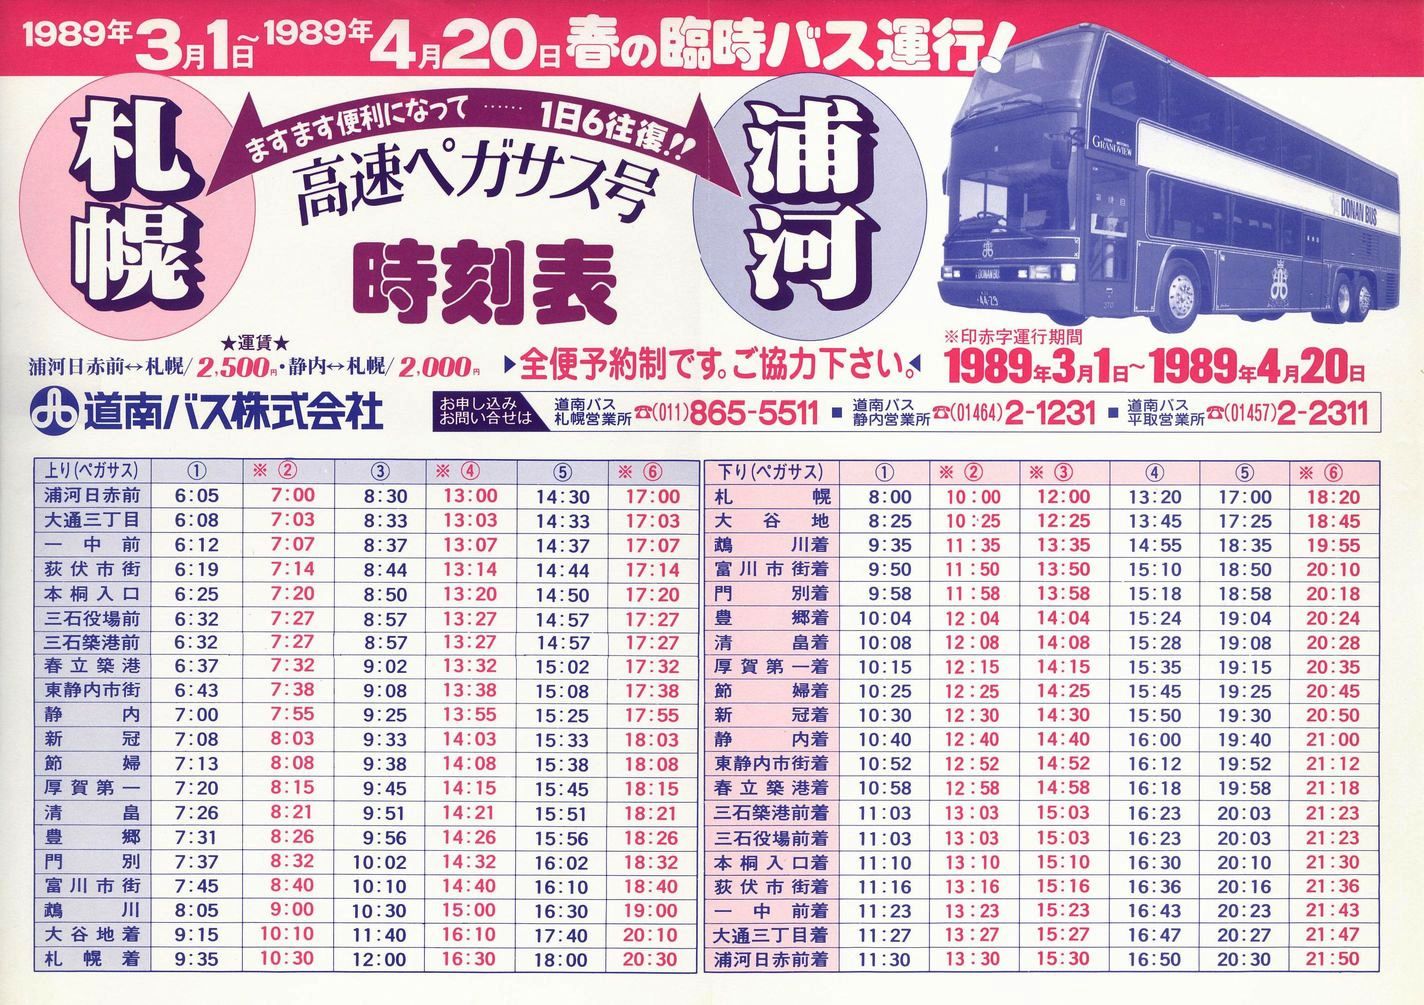 1989-03-01改正_道南バス_高速ペガサス号時刻表